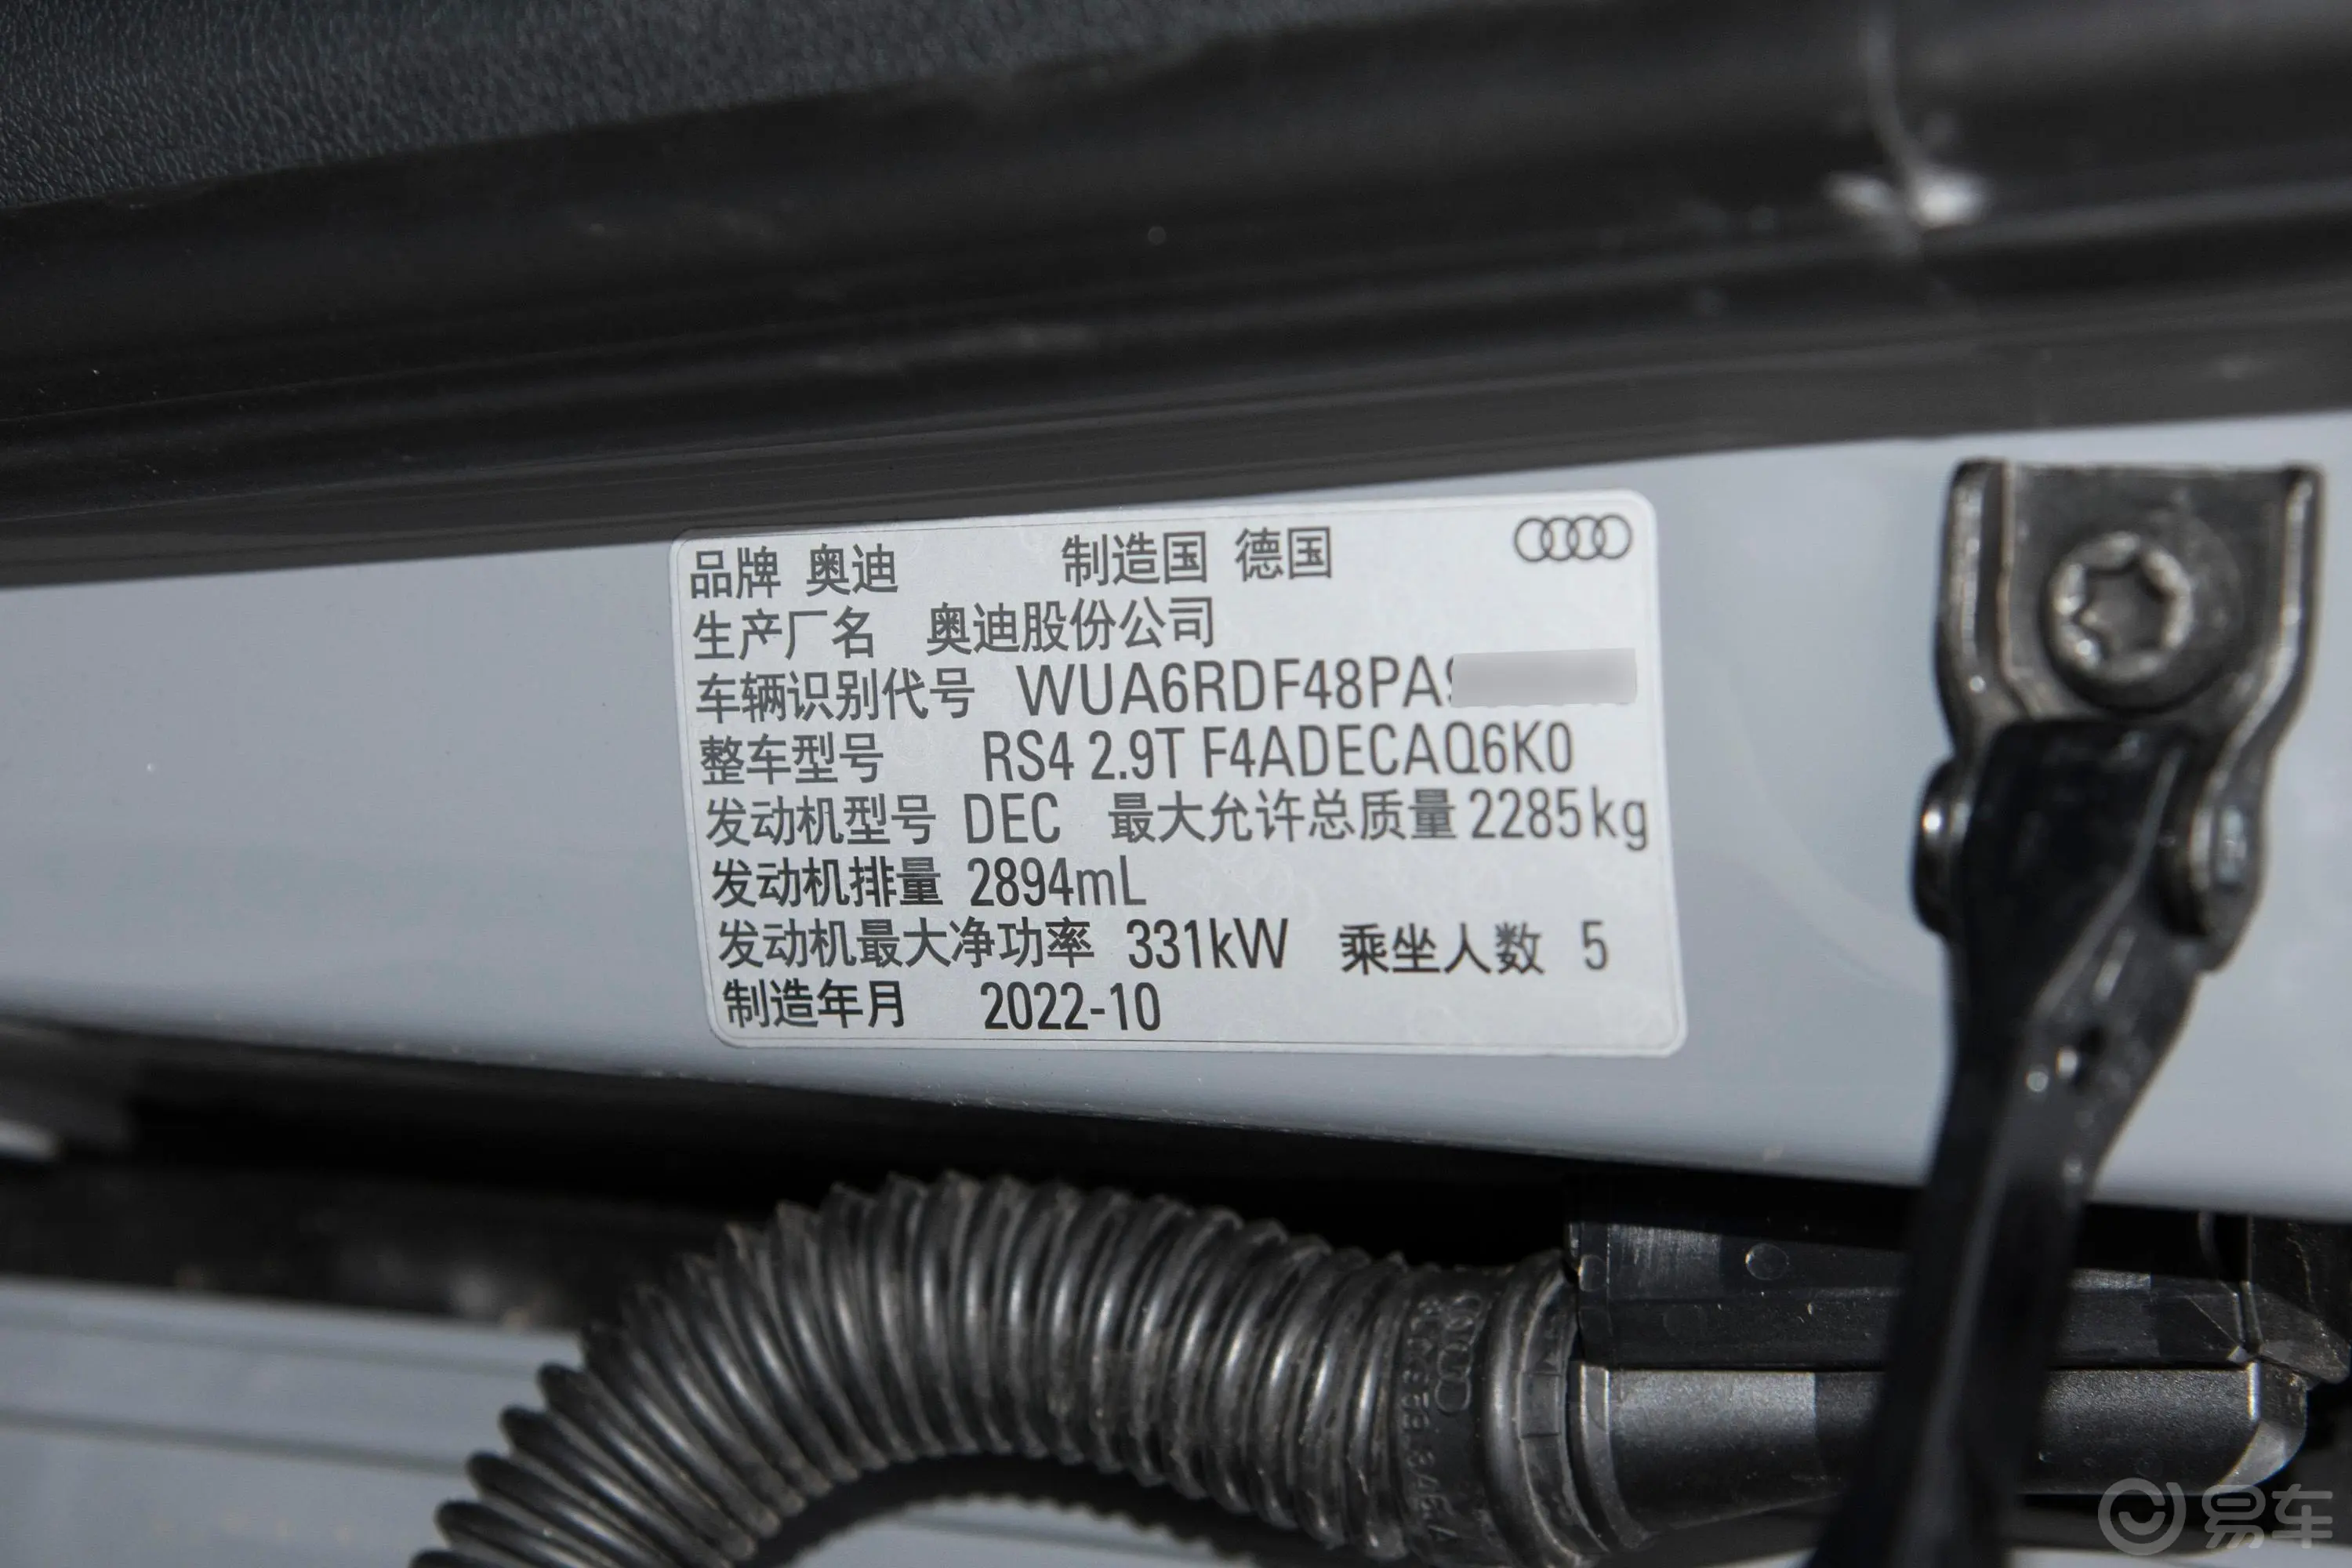 奥迪RS 42.9T Avant 黑曜版车辆信息铭牌